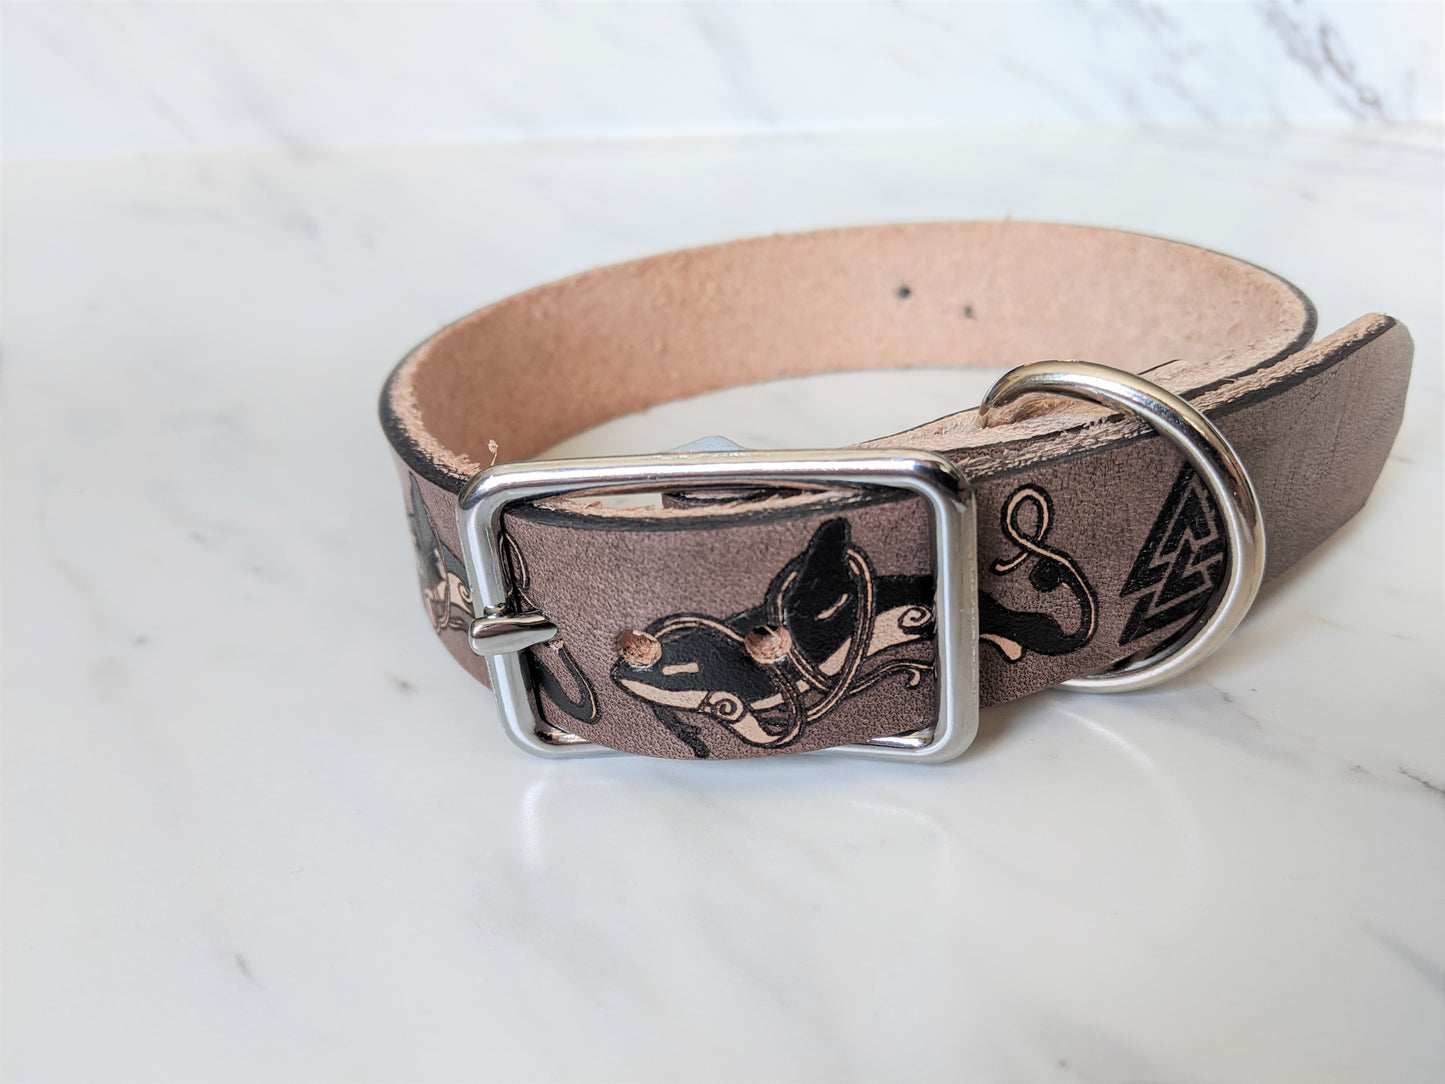 Orca Pod - Leather Dog Collar